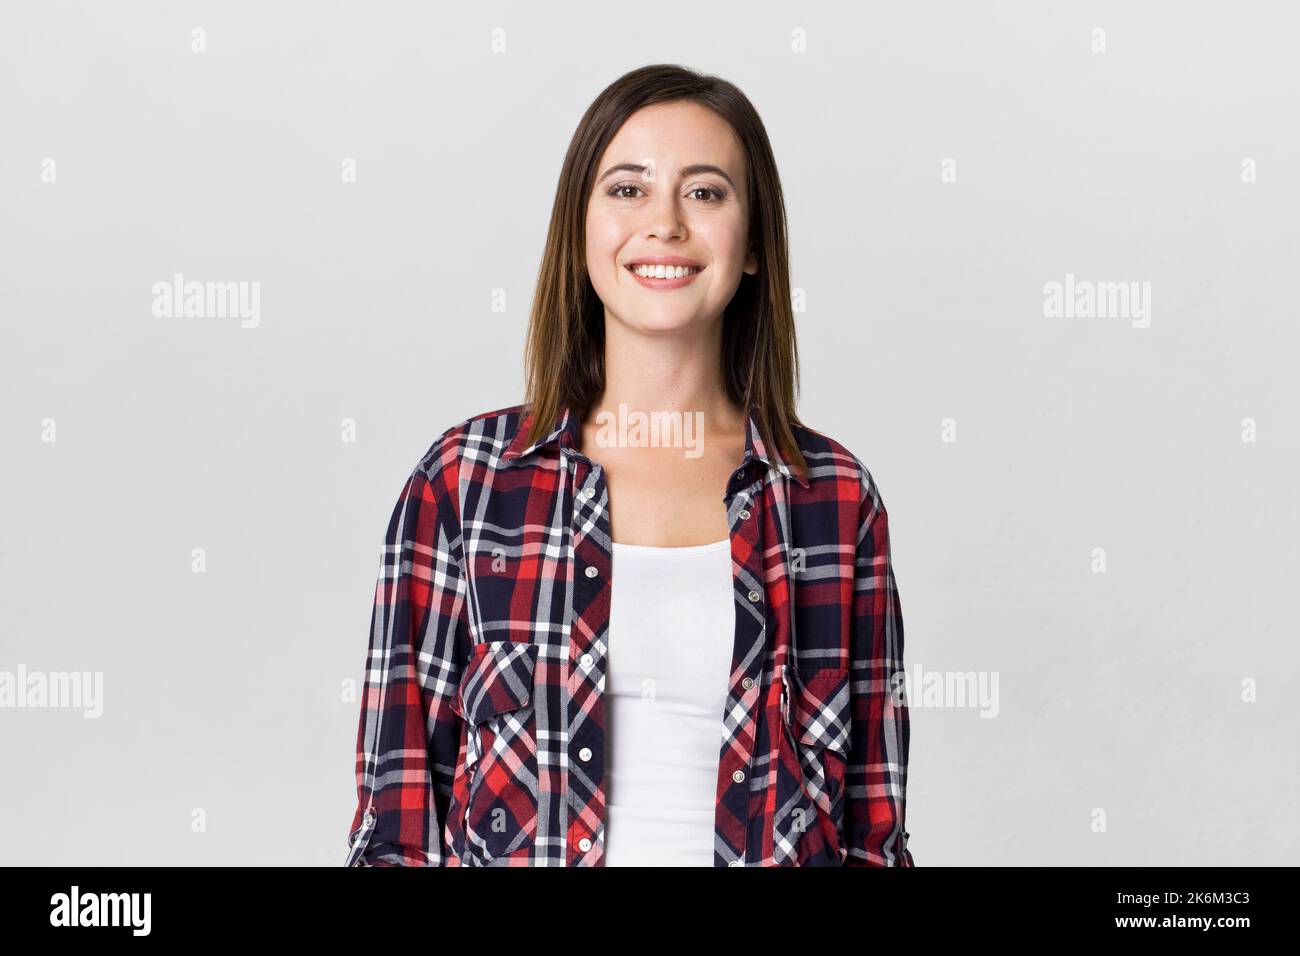 Lächelnd positive weibliche mit attraktiven Look, mit kariertem Hemd, gegen Weiße leere Wand posieren Stockfoto